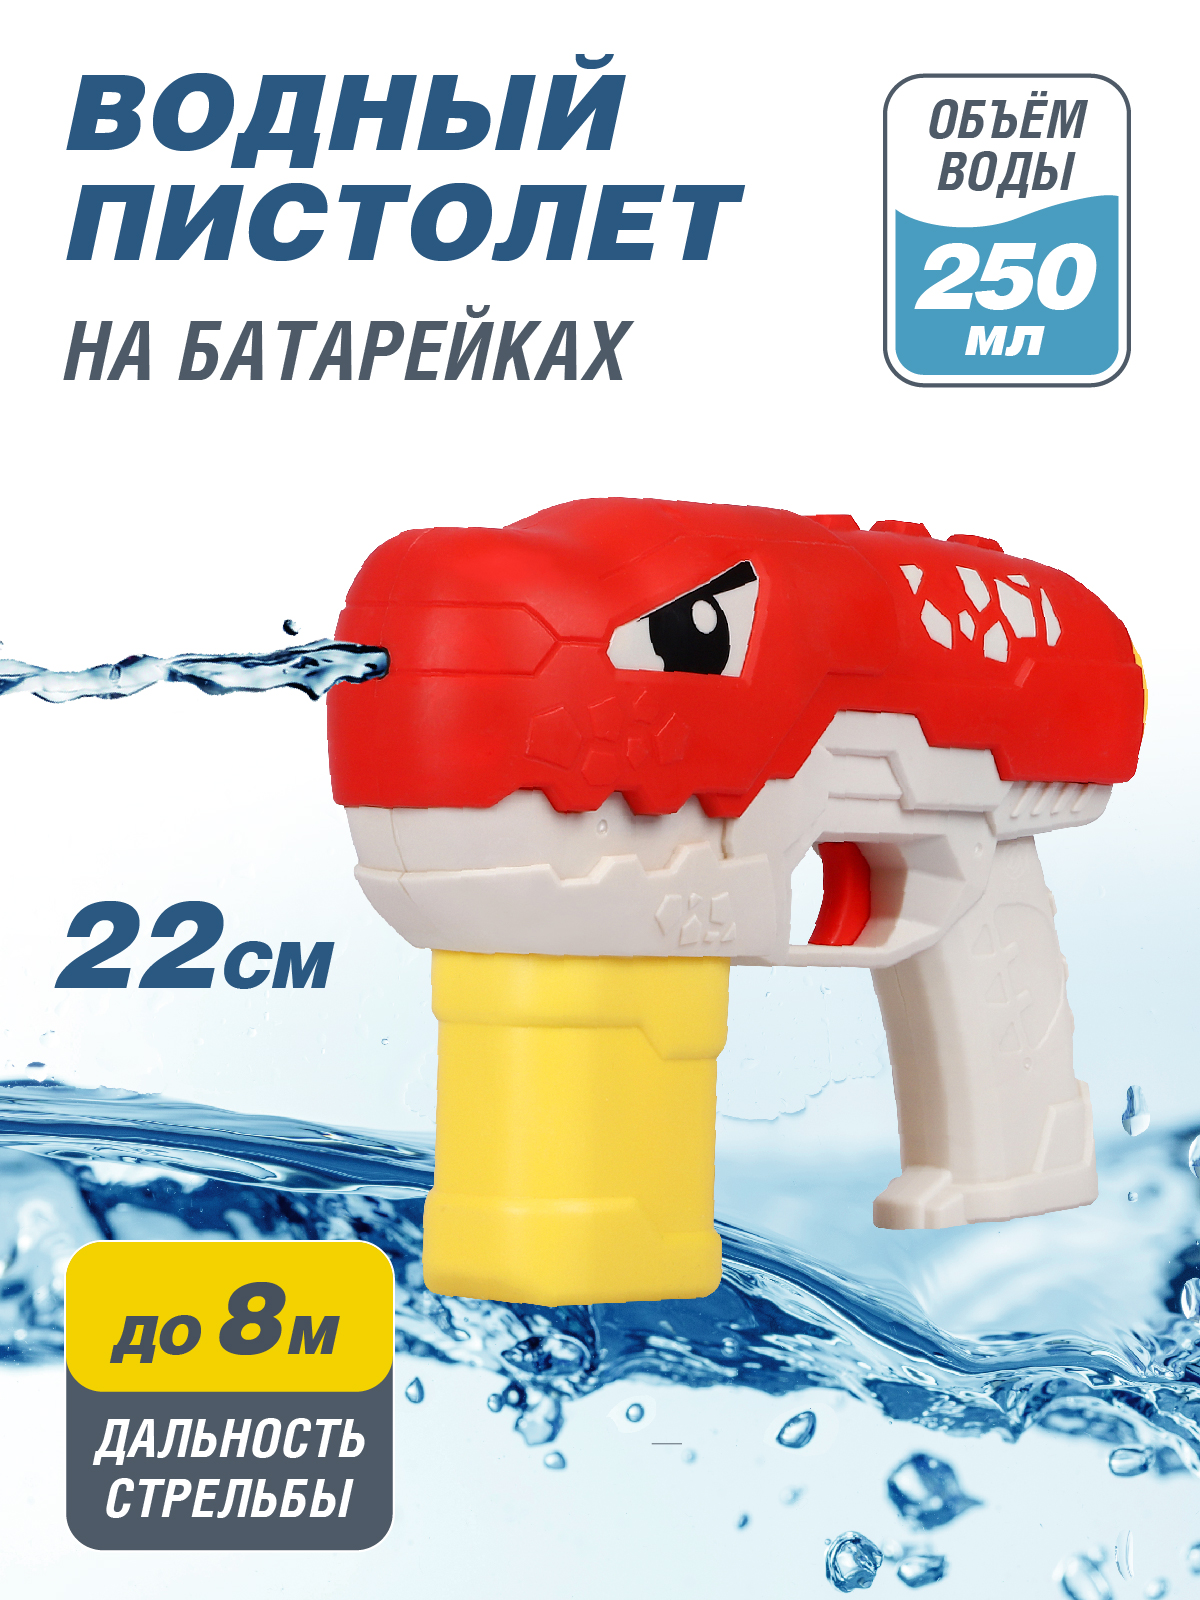 Водяное игрушечное оружие Маленький воин на батарейках, JB0211500 водяное оружие полесье аквадрайв 7 33 см в пакете